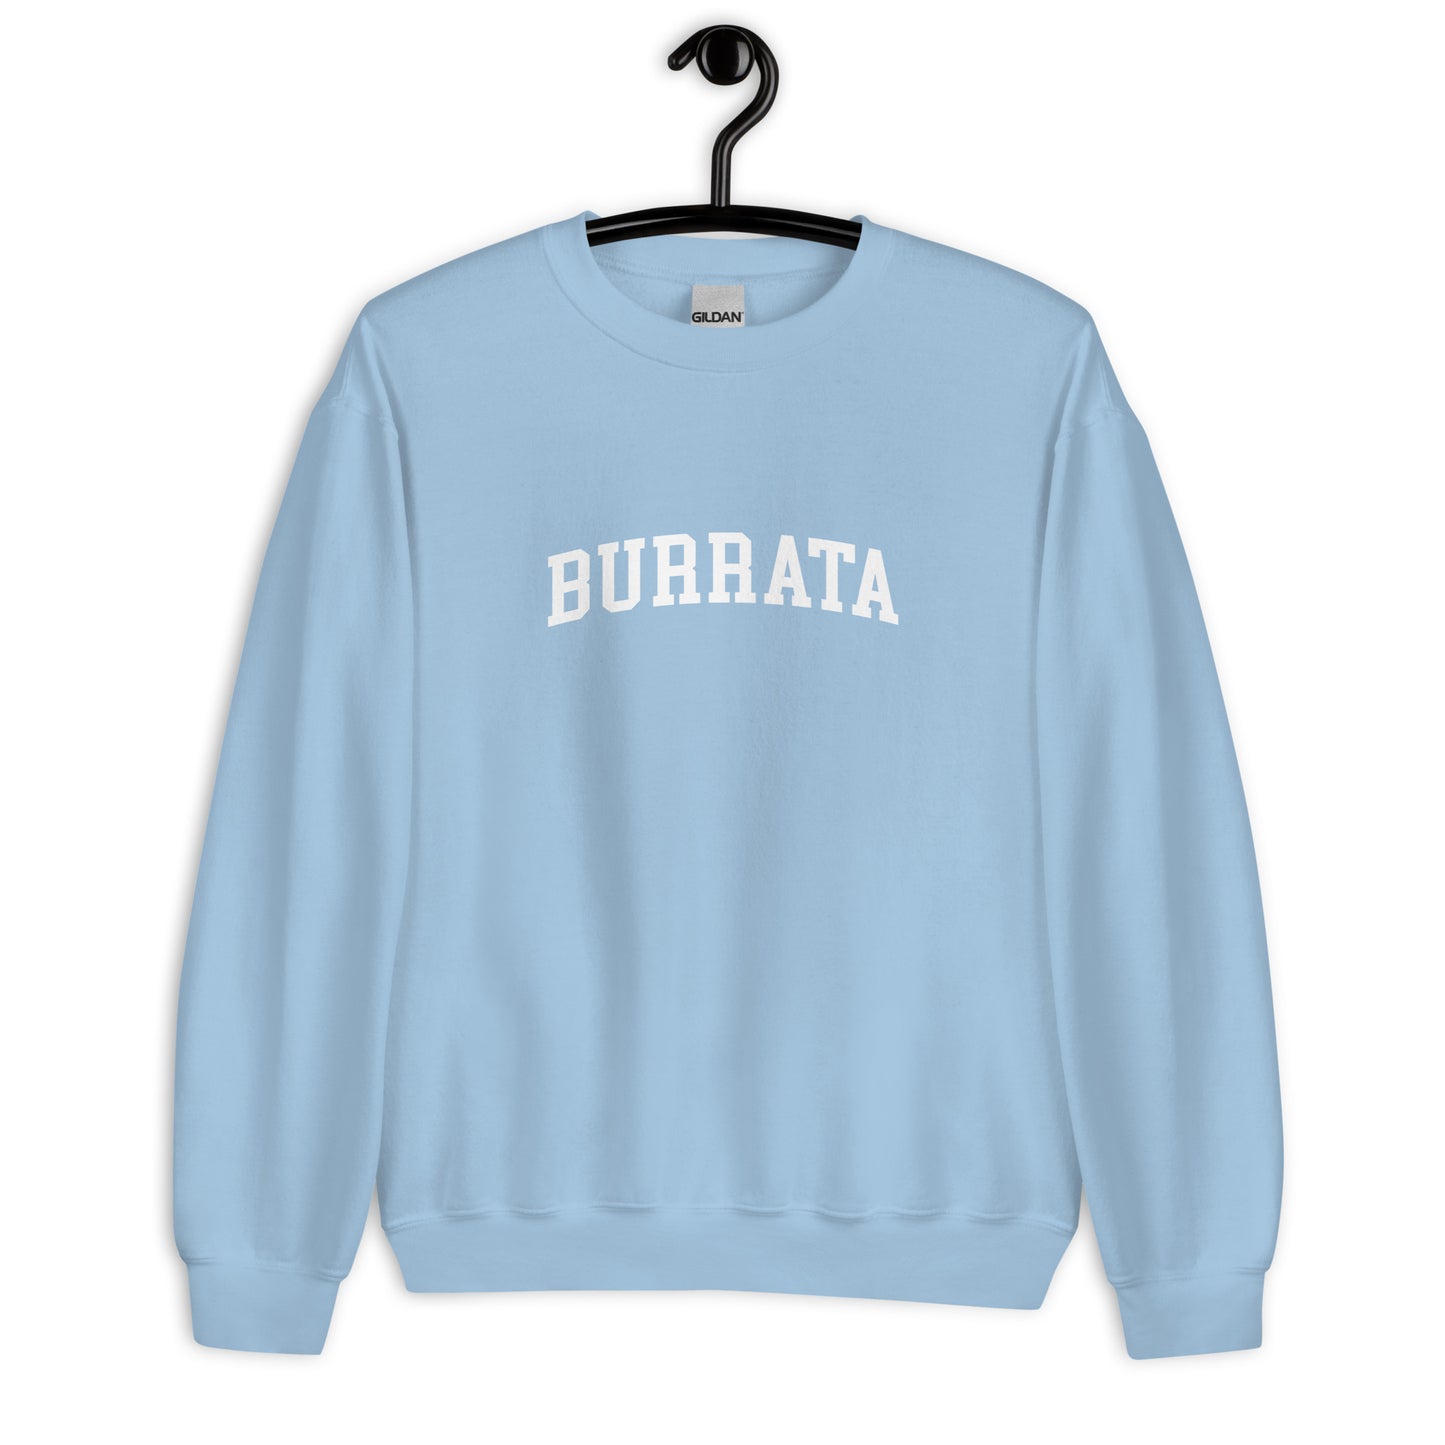 Burrata Sweatshirt - Arched Font